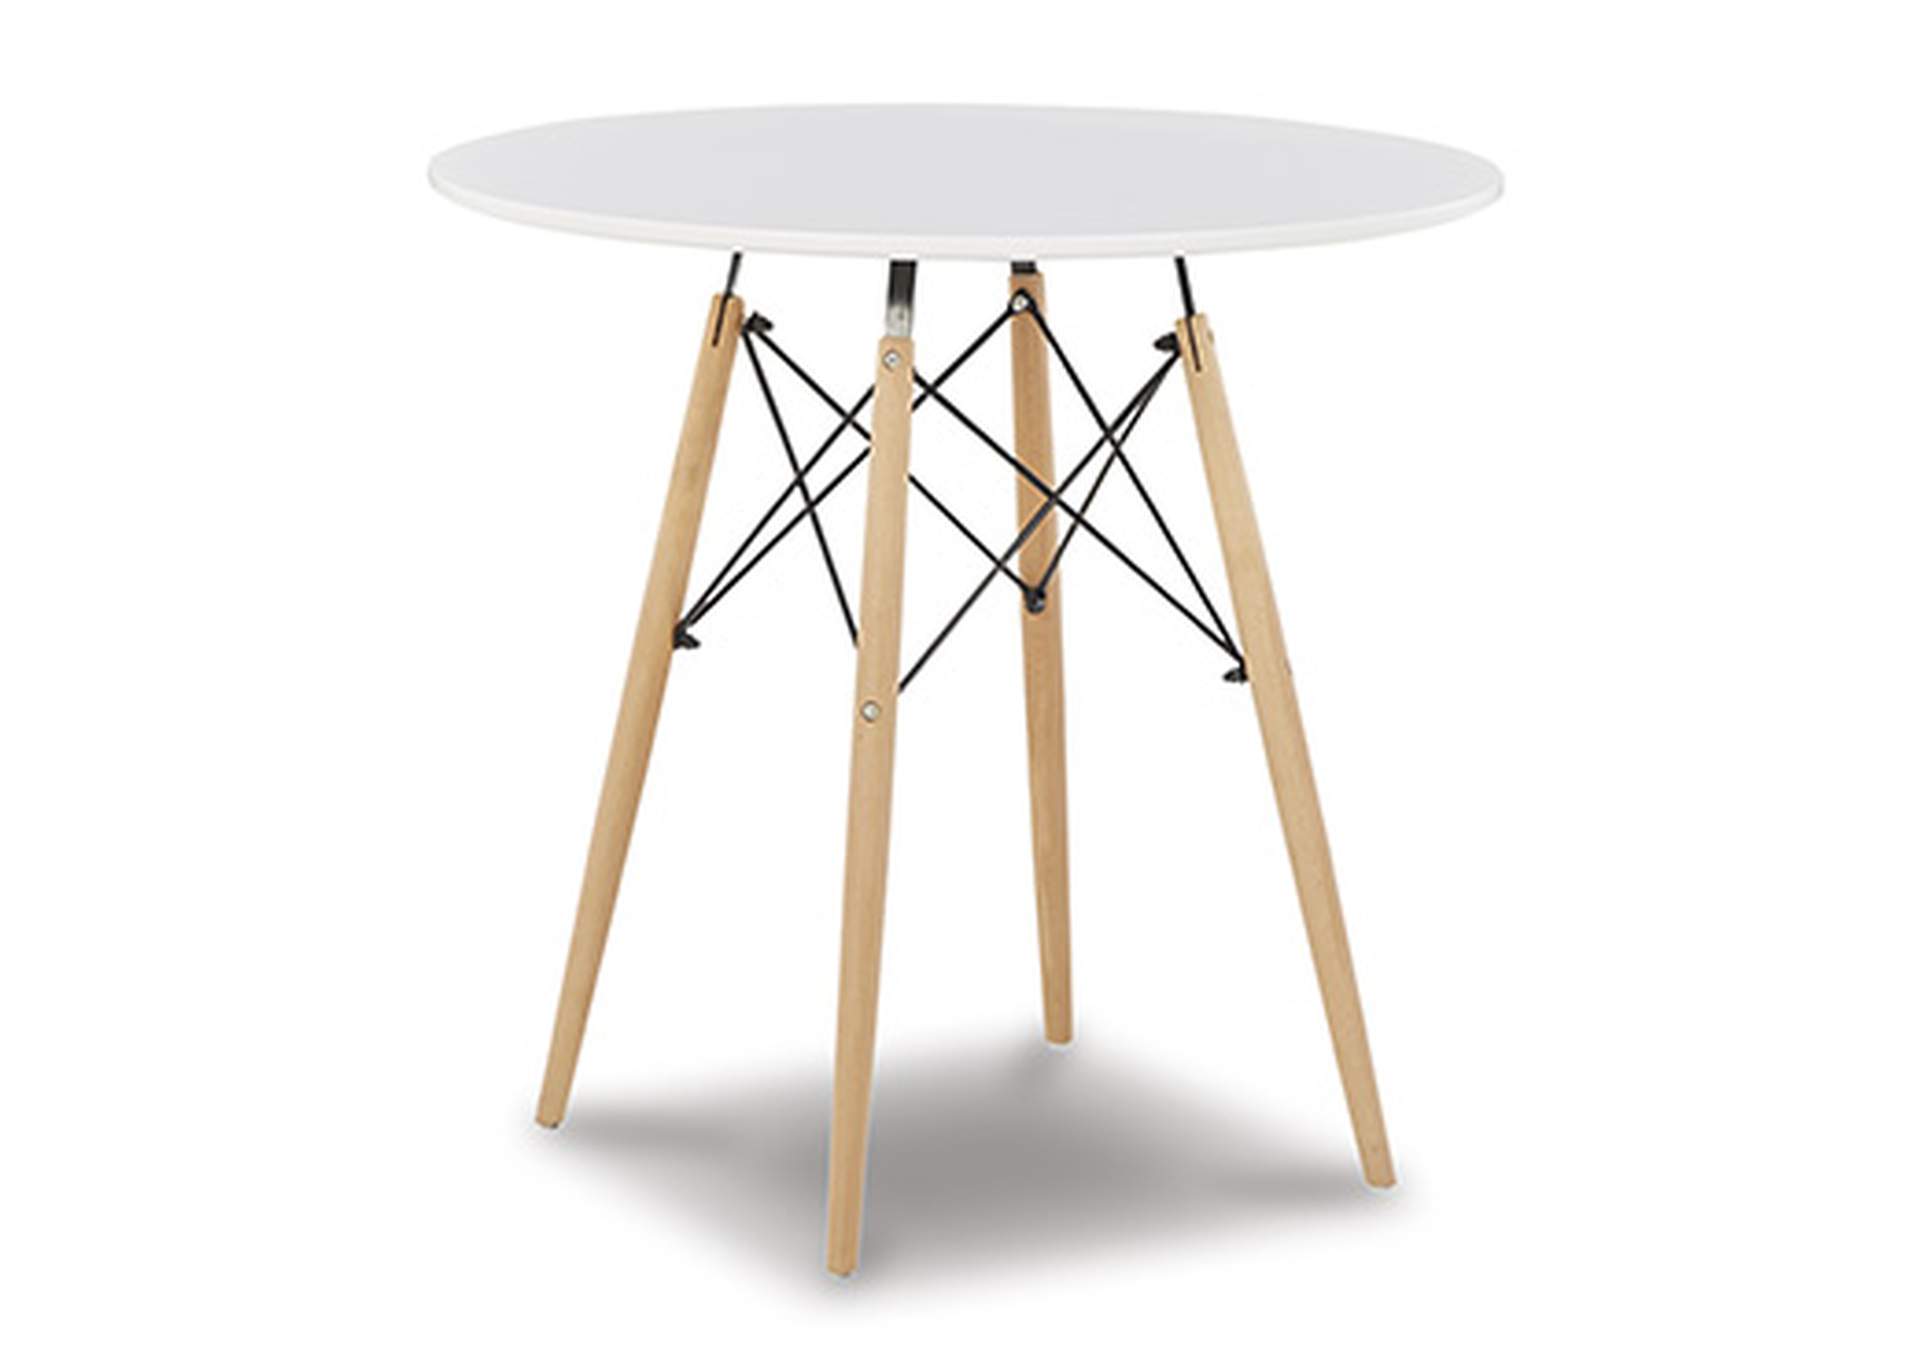 Jaspeni Dining Table,Signature Design By Ashley